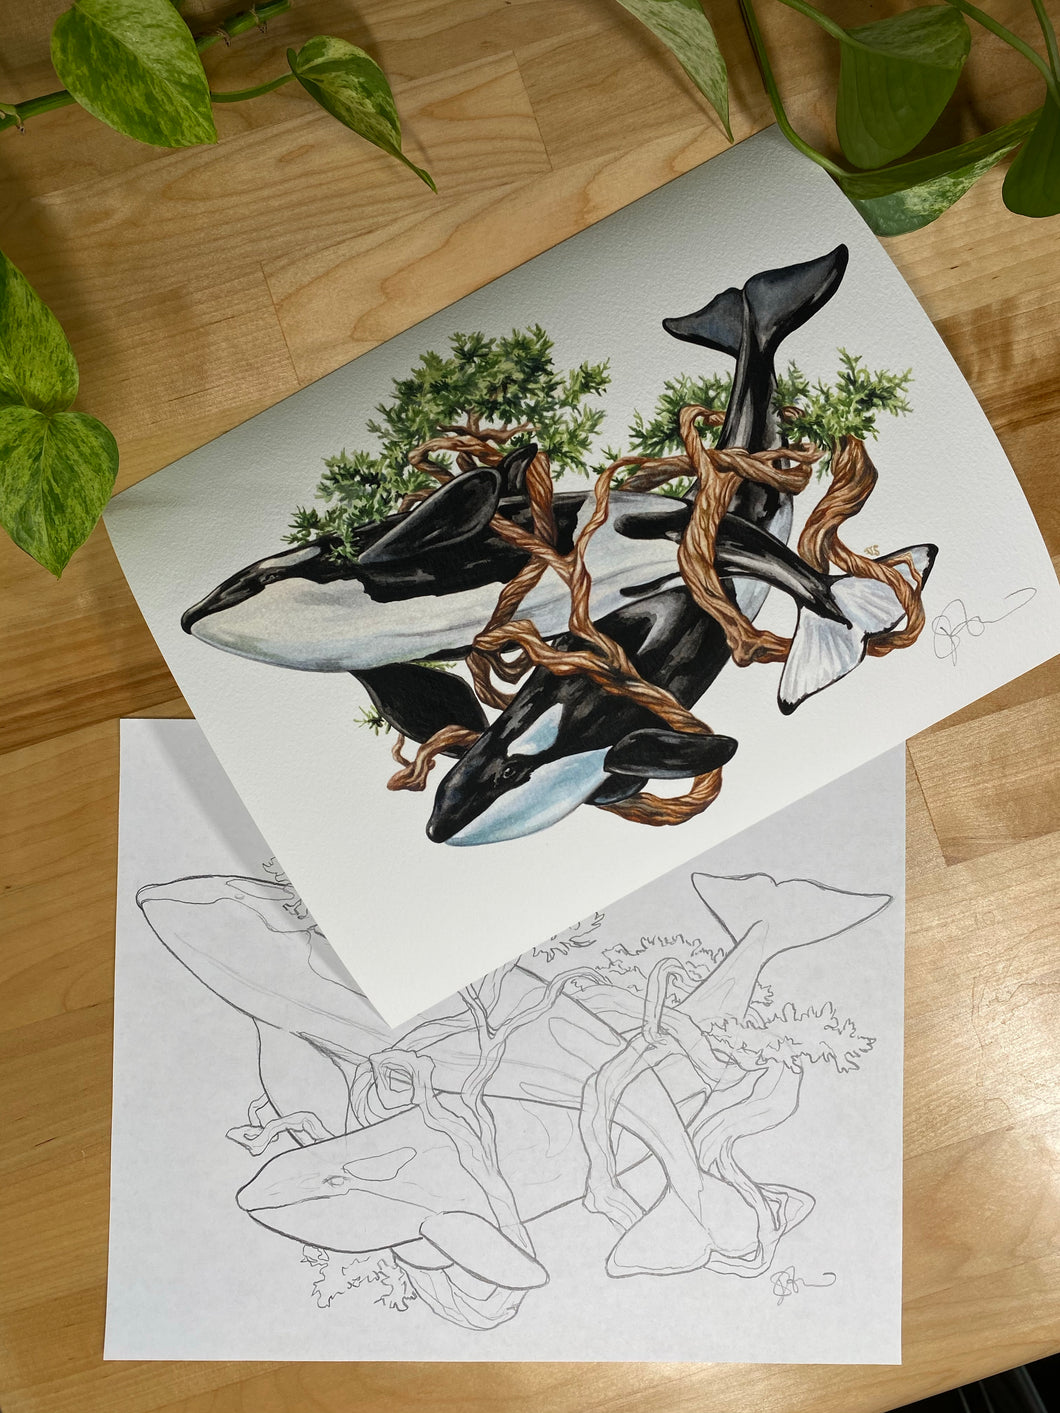 Orca original sketch and print